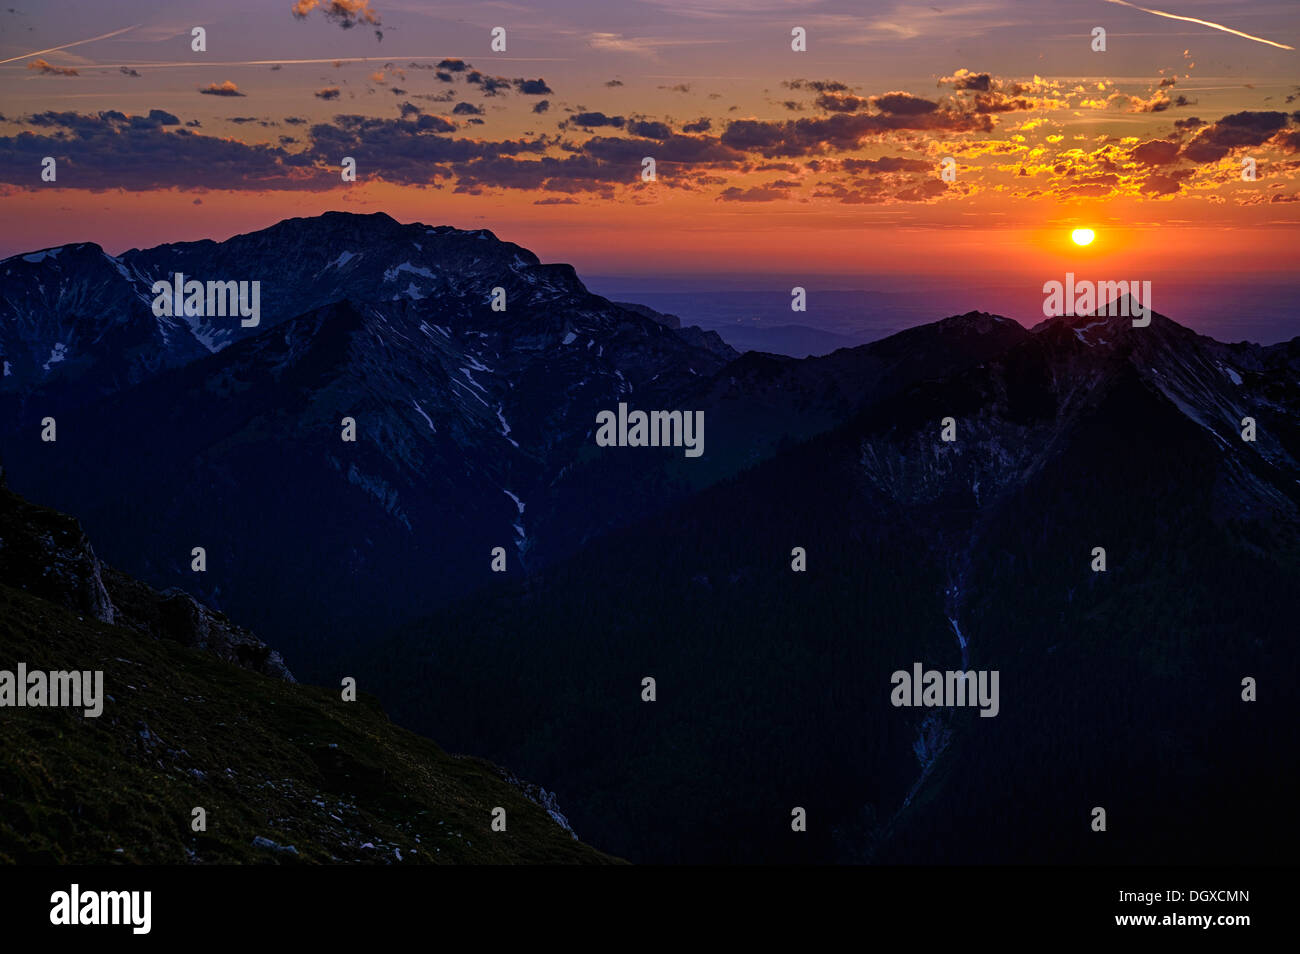 Soleil du soir, coucher de soleil, plus de sommets de montagnes, Mt Kreuzspitze, municipalité d'Ettal, montagnes Ammer, Bavière Banque D'Images